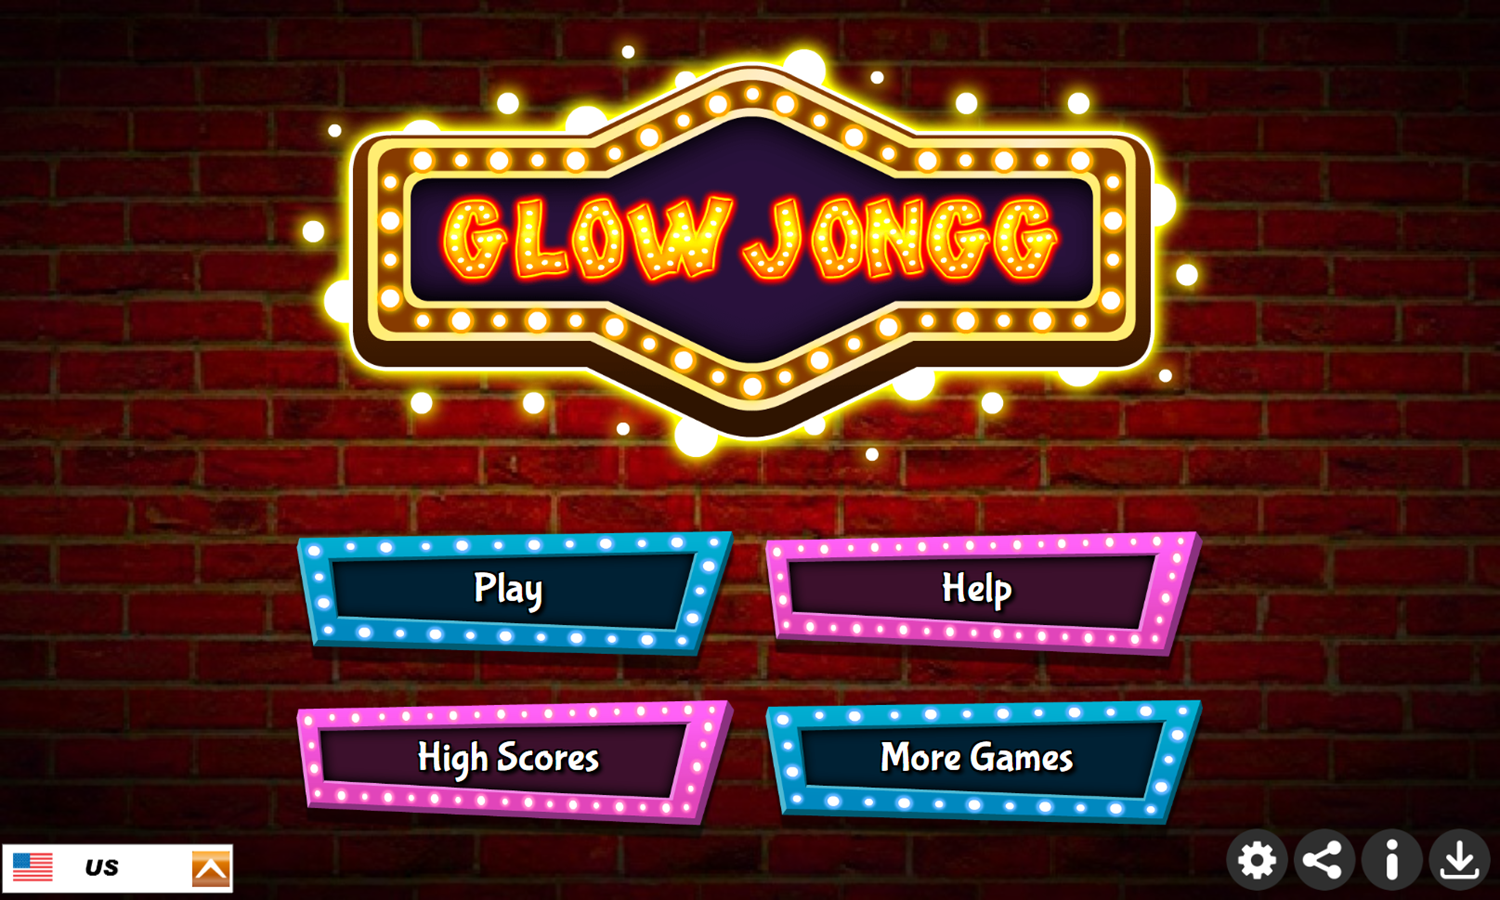 Glow Jongg Game Welcome Screen Screenshot.